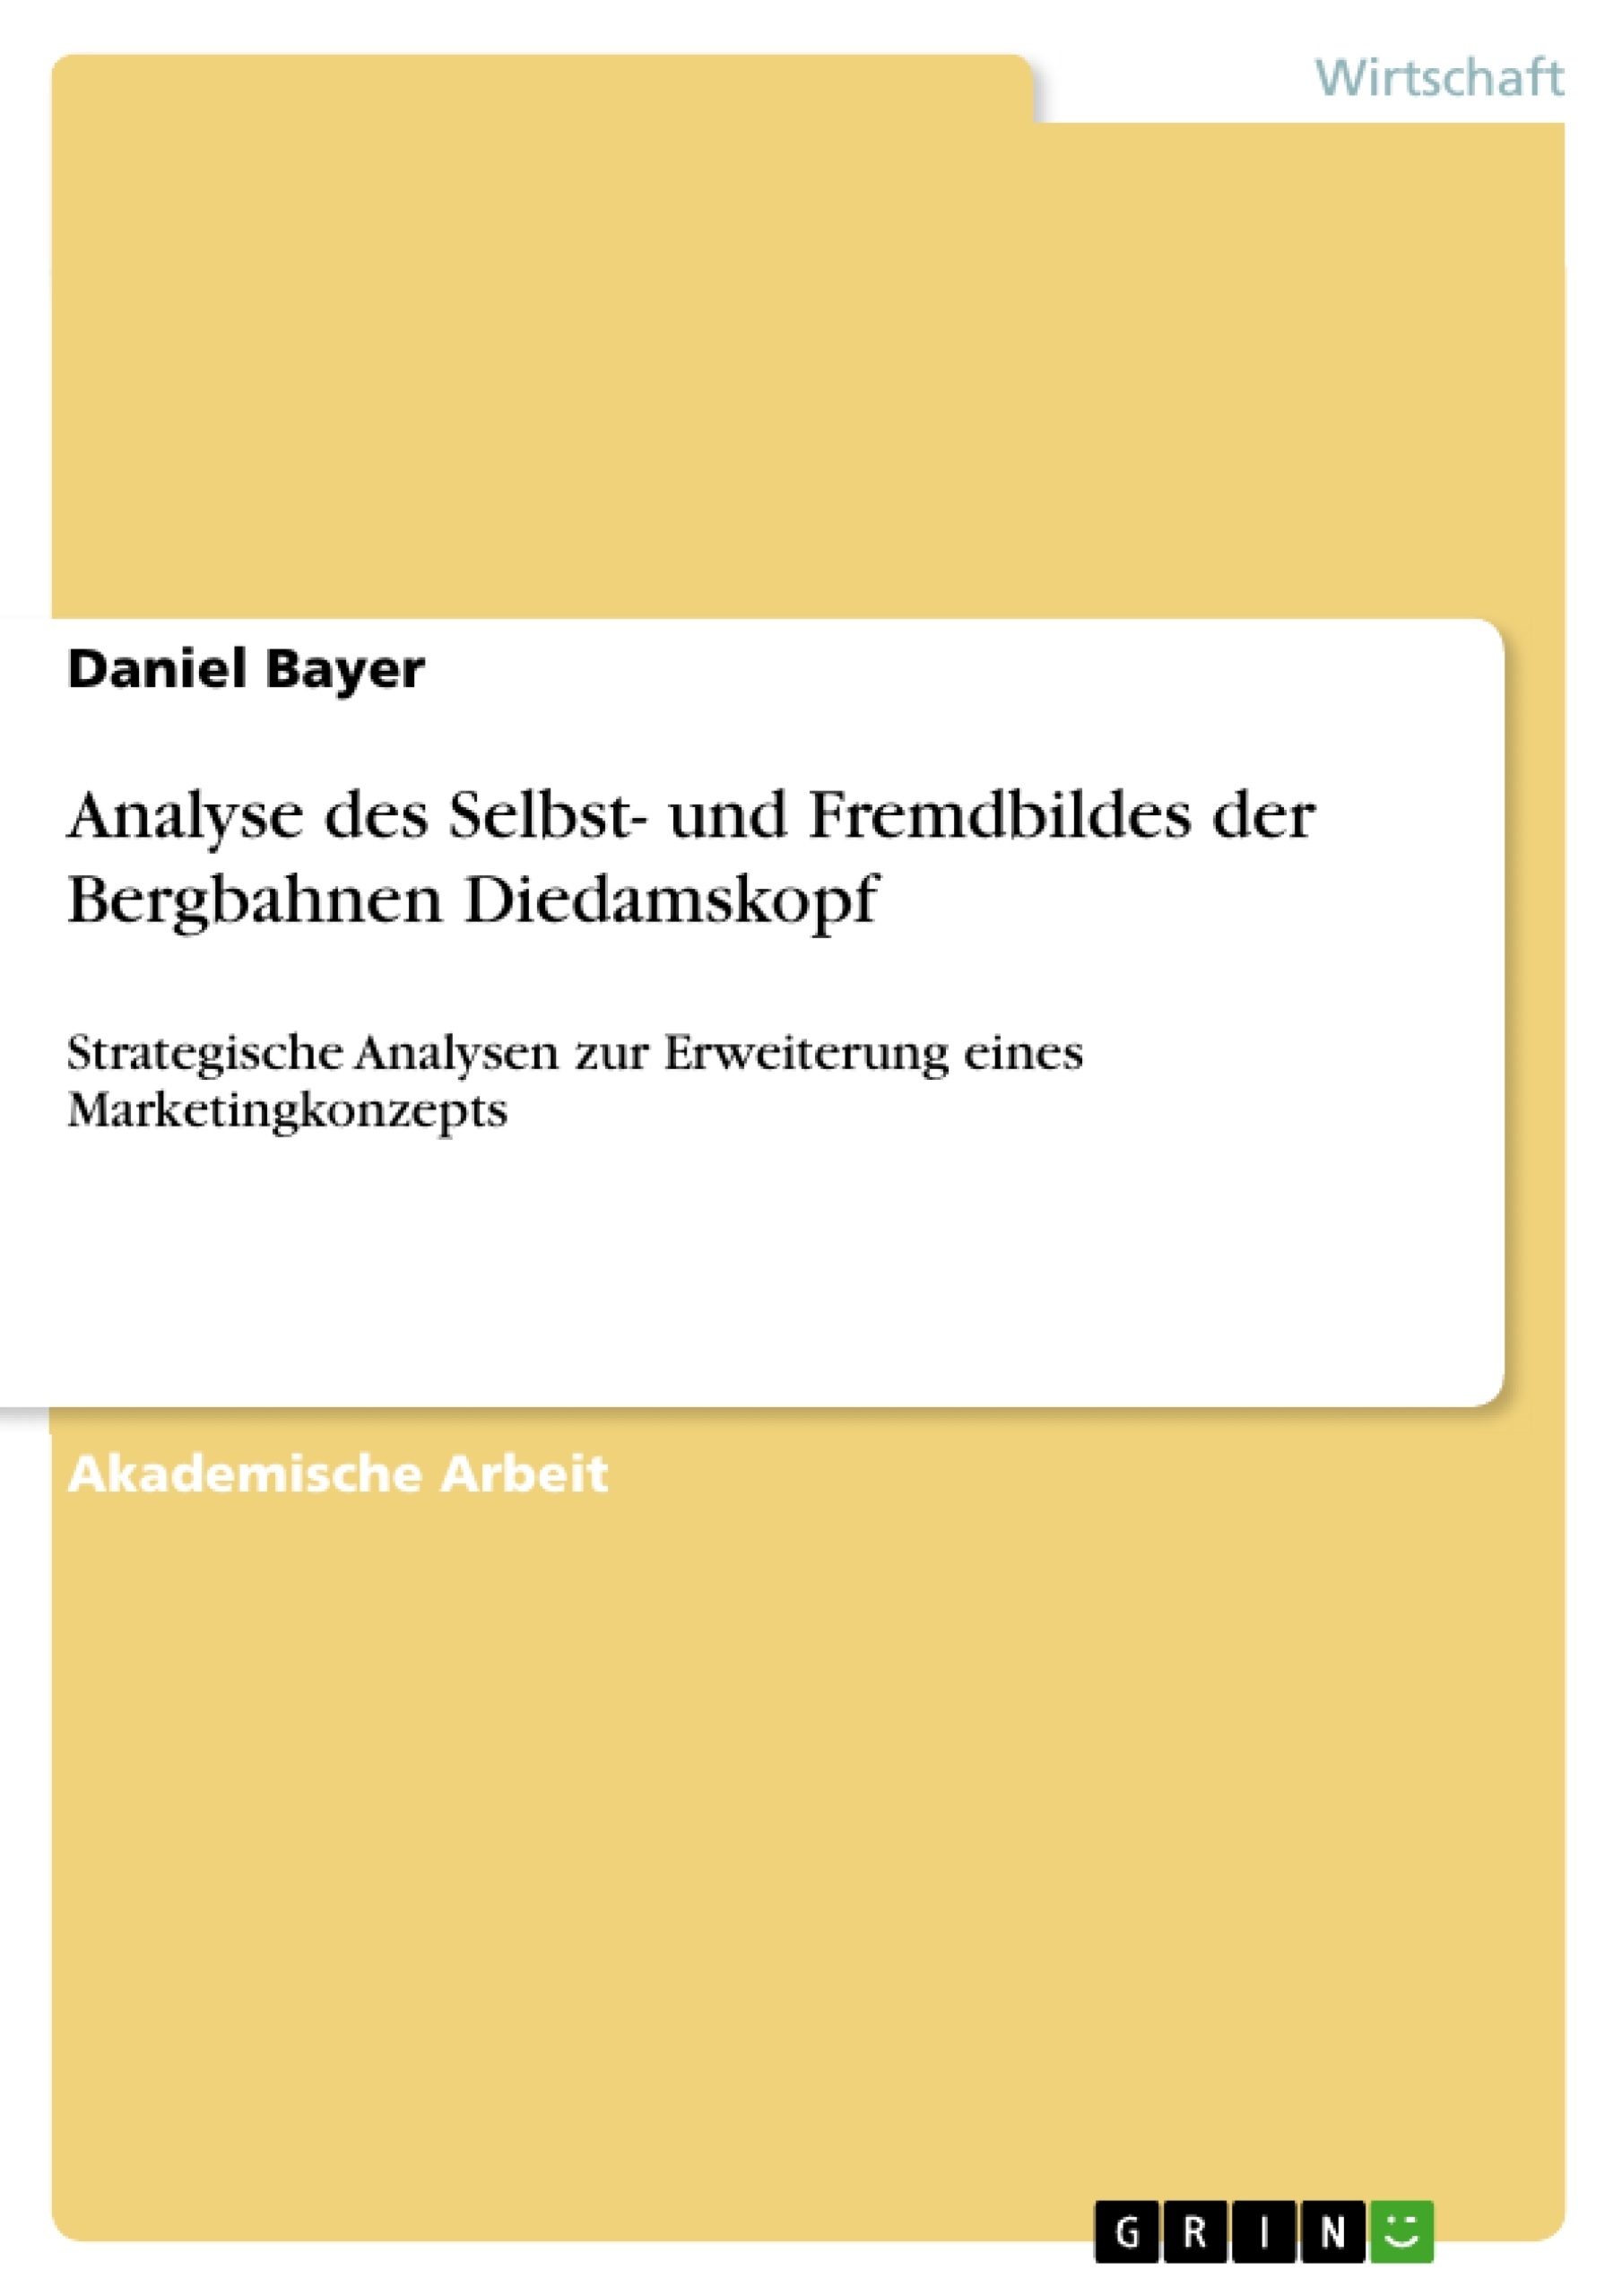 Título: Analyse des Selbst- und Fremdbildes der Bergbahnen Diedamskopf